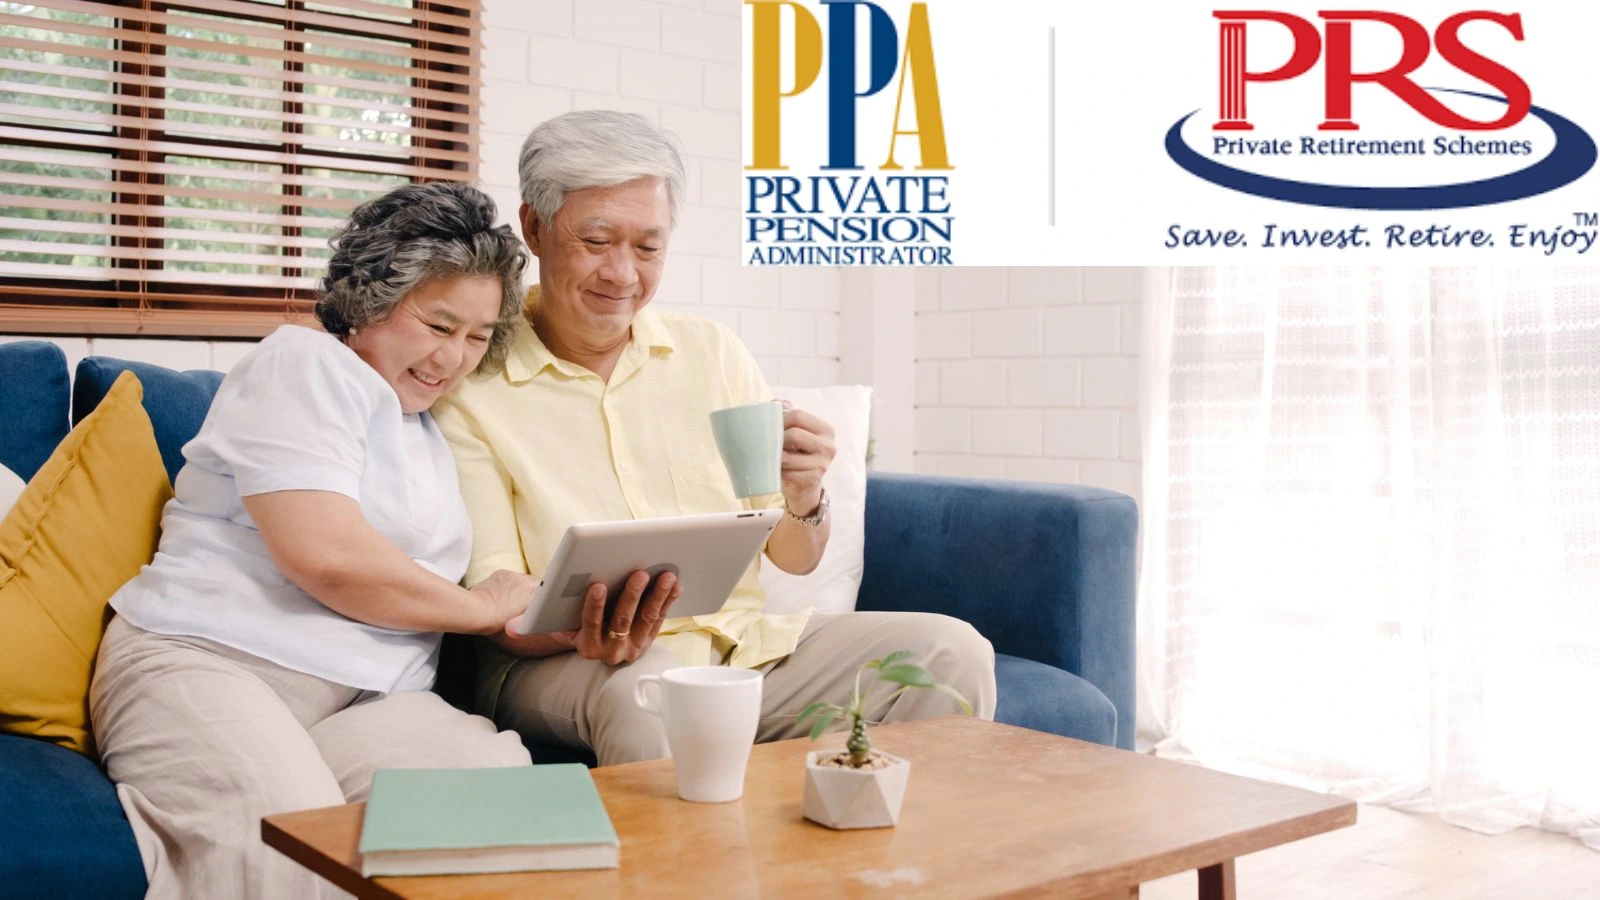 投資 PRS 私人退休計劃，讓你輕鬆退休